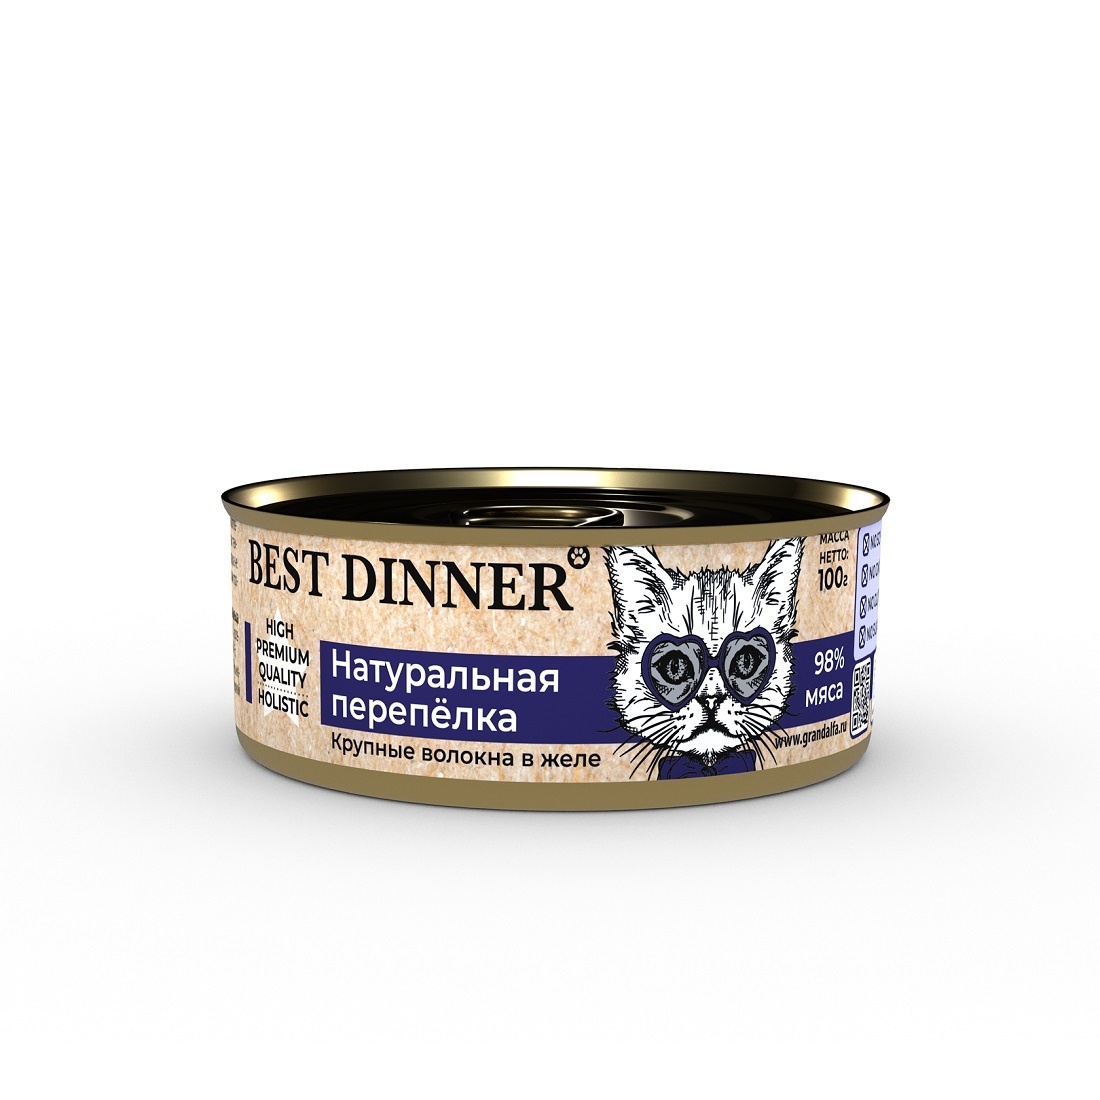 Best Dinner Best Dinner консервы для кошек в желе Натуральная перепелка (100 г)